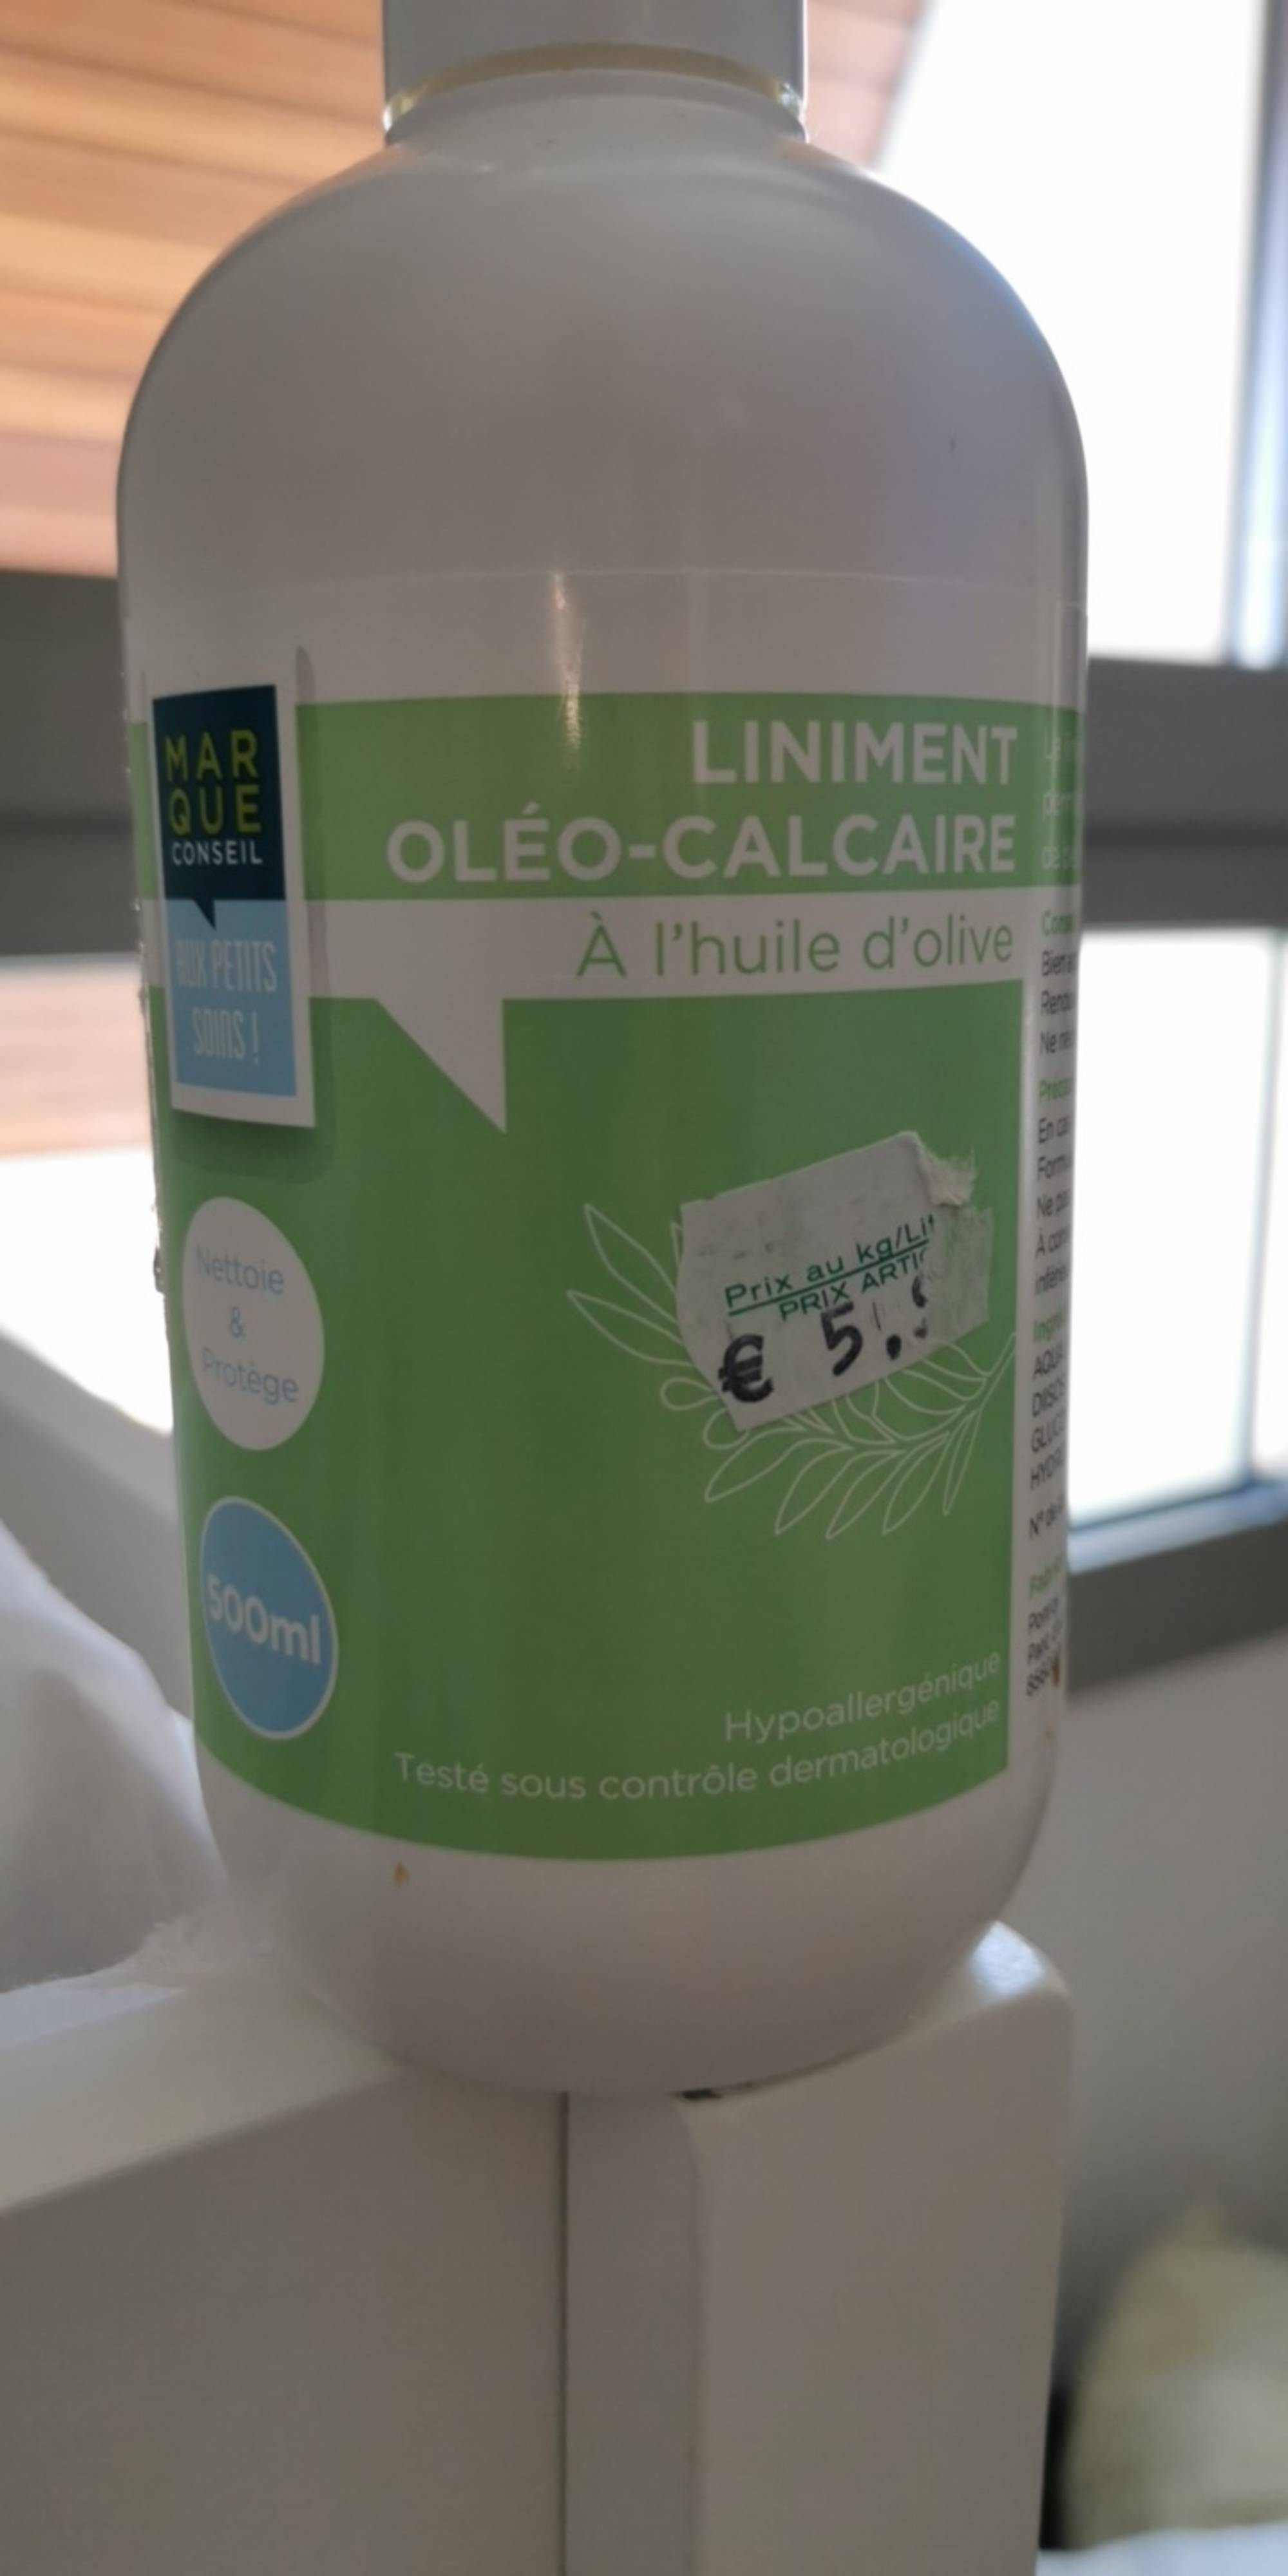 MARQUE CONSEIL - Liniment oléo-calcaire à l'huile d'olive